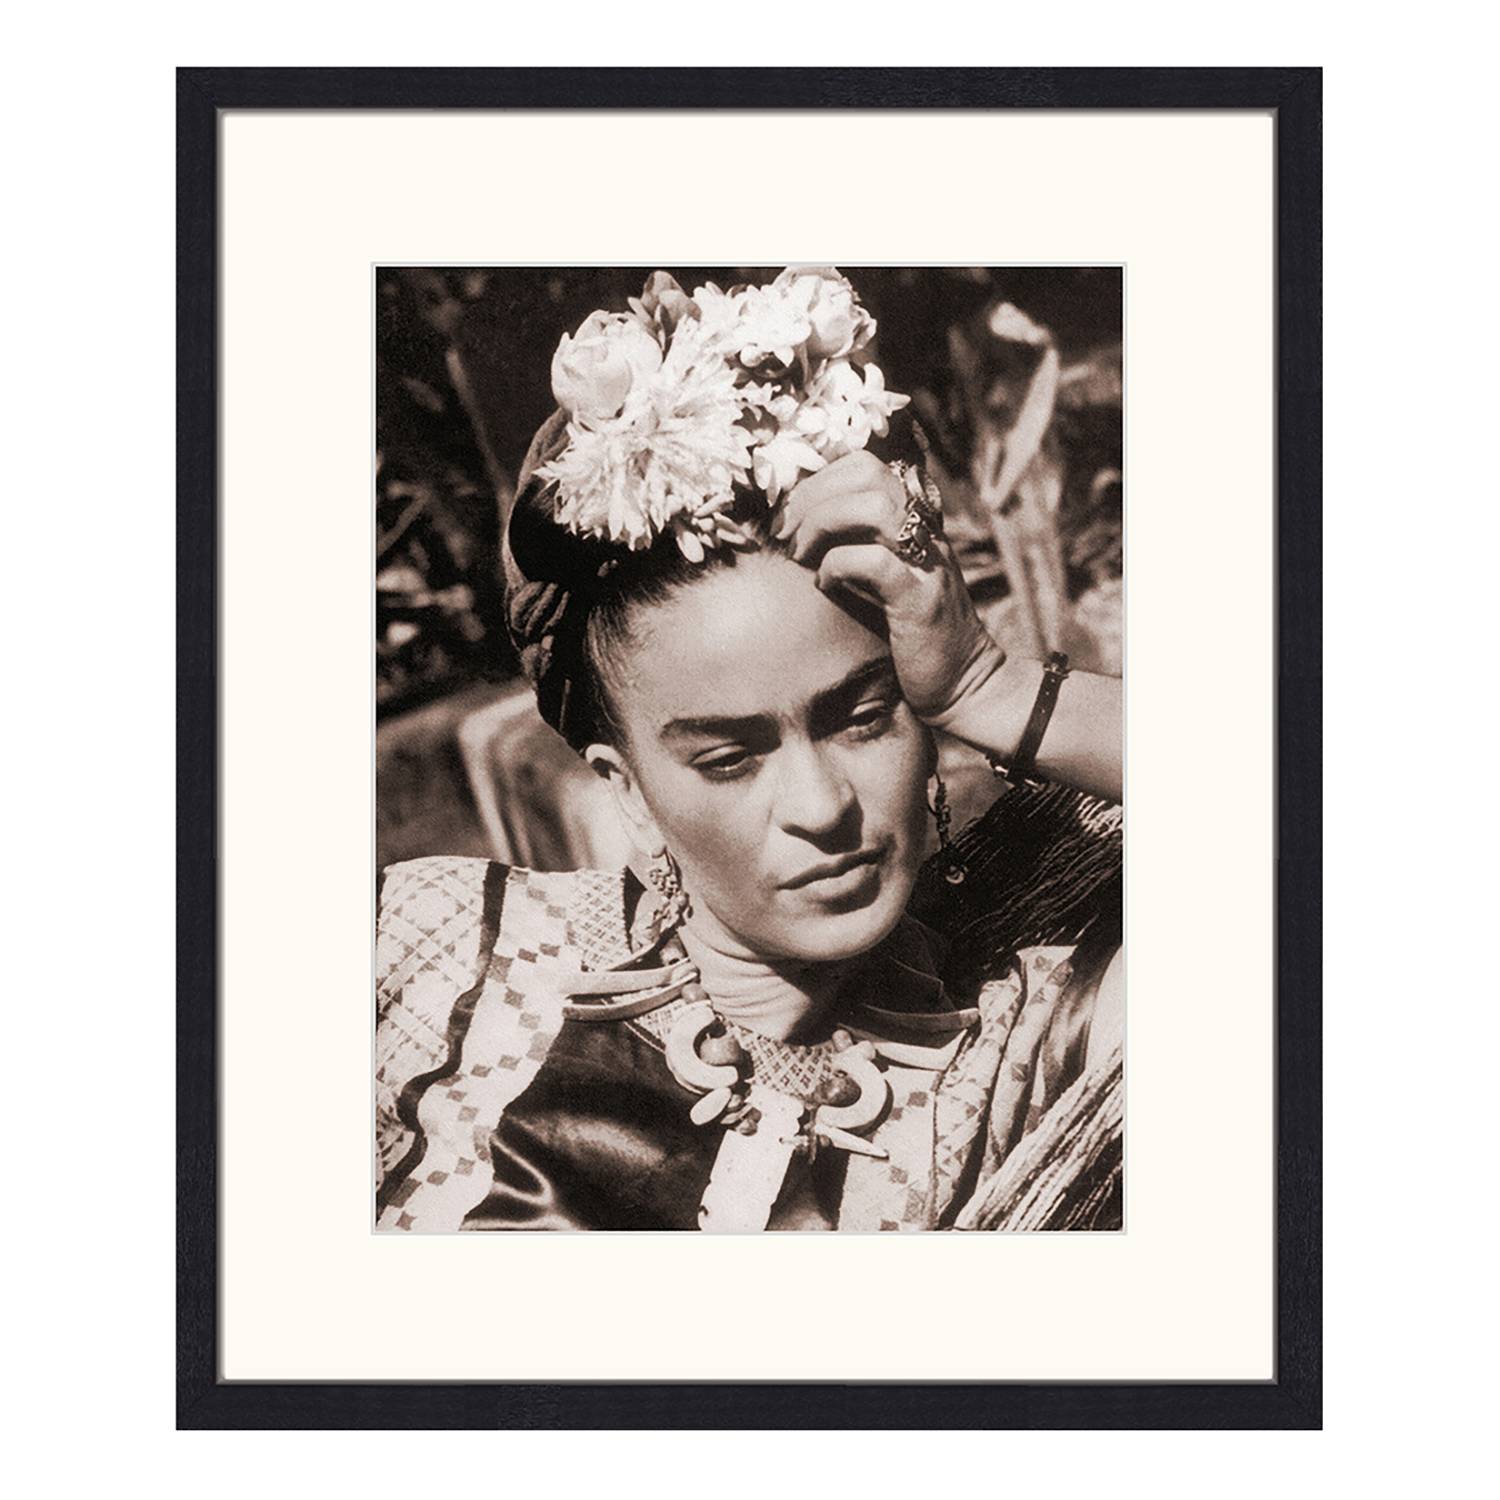 Bild Frida Kahlo kaufen | home24